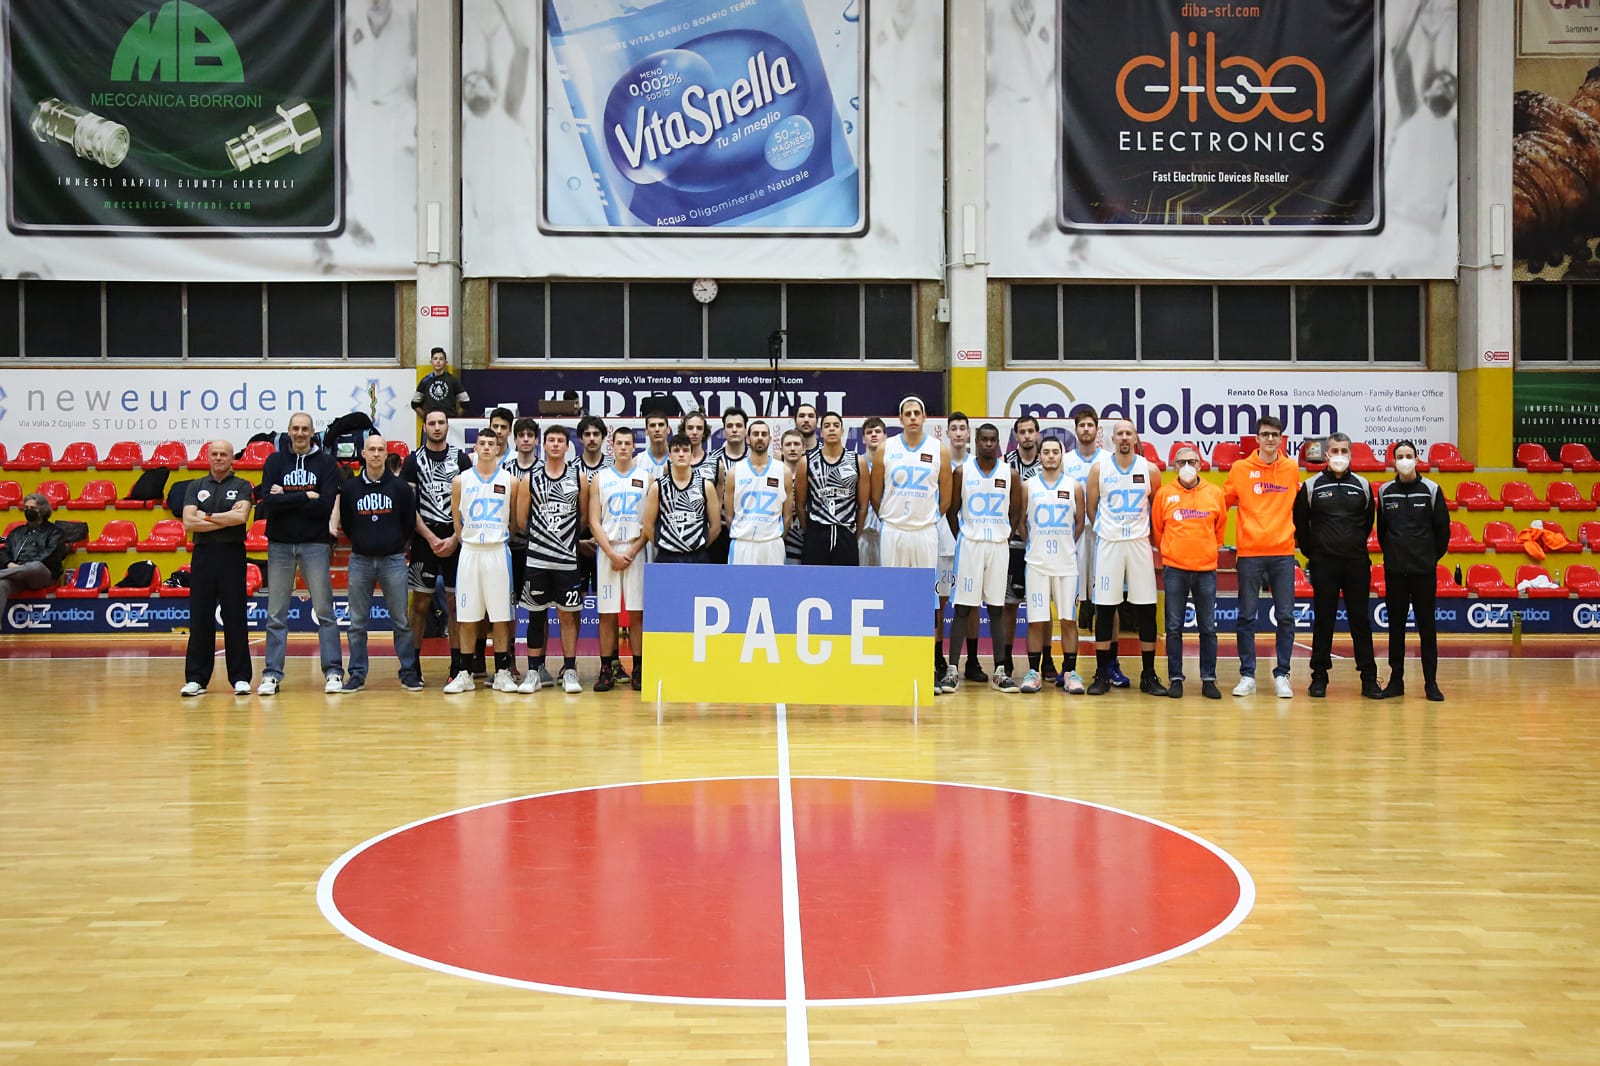 Messaggio di pace per l’Ucraina anche dal basket di Saronno